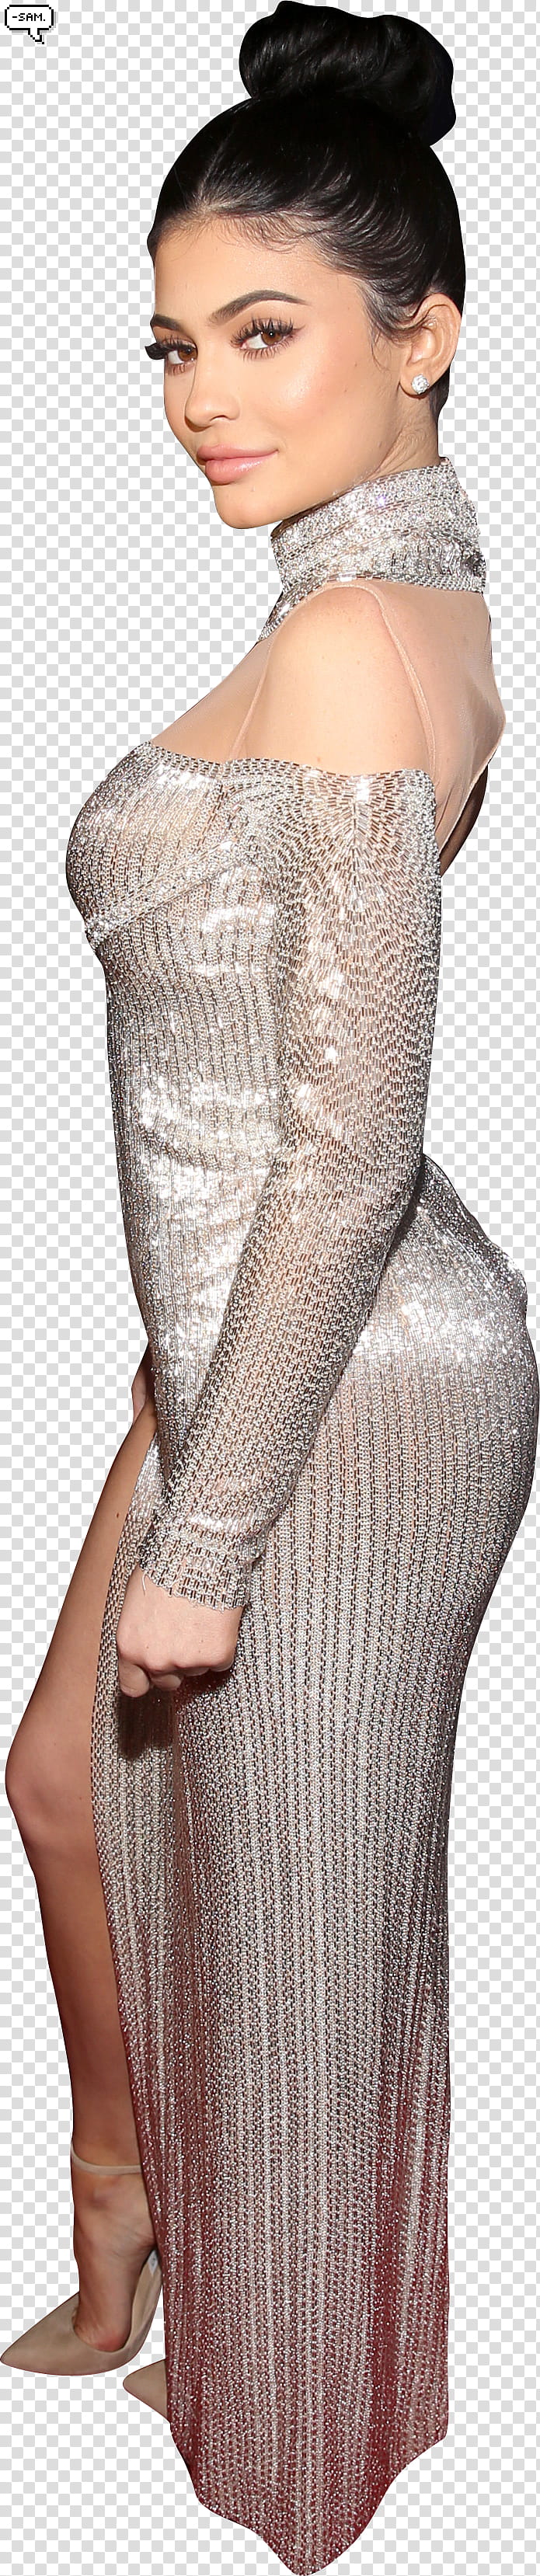 Kylie Jenner O,,SAM () transparent background PNG clipart